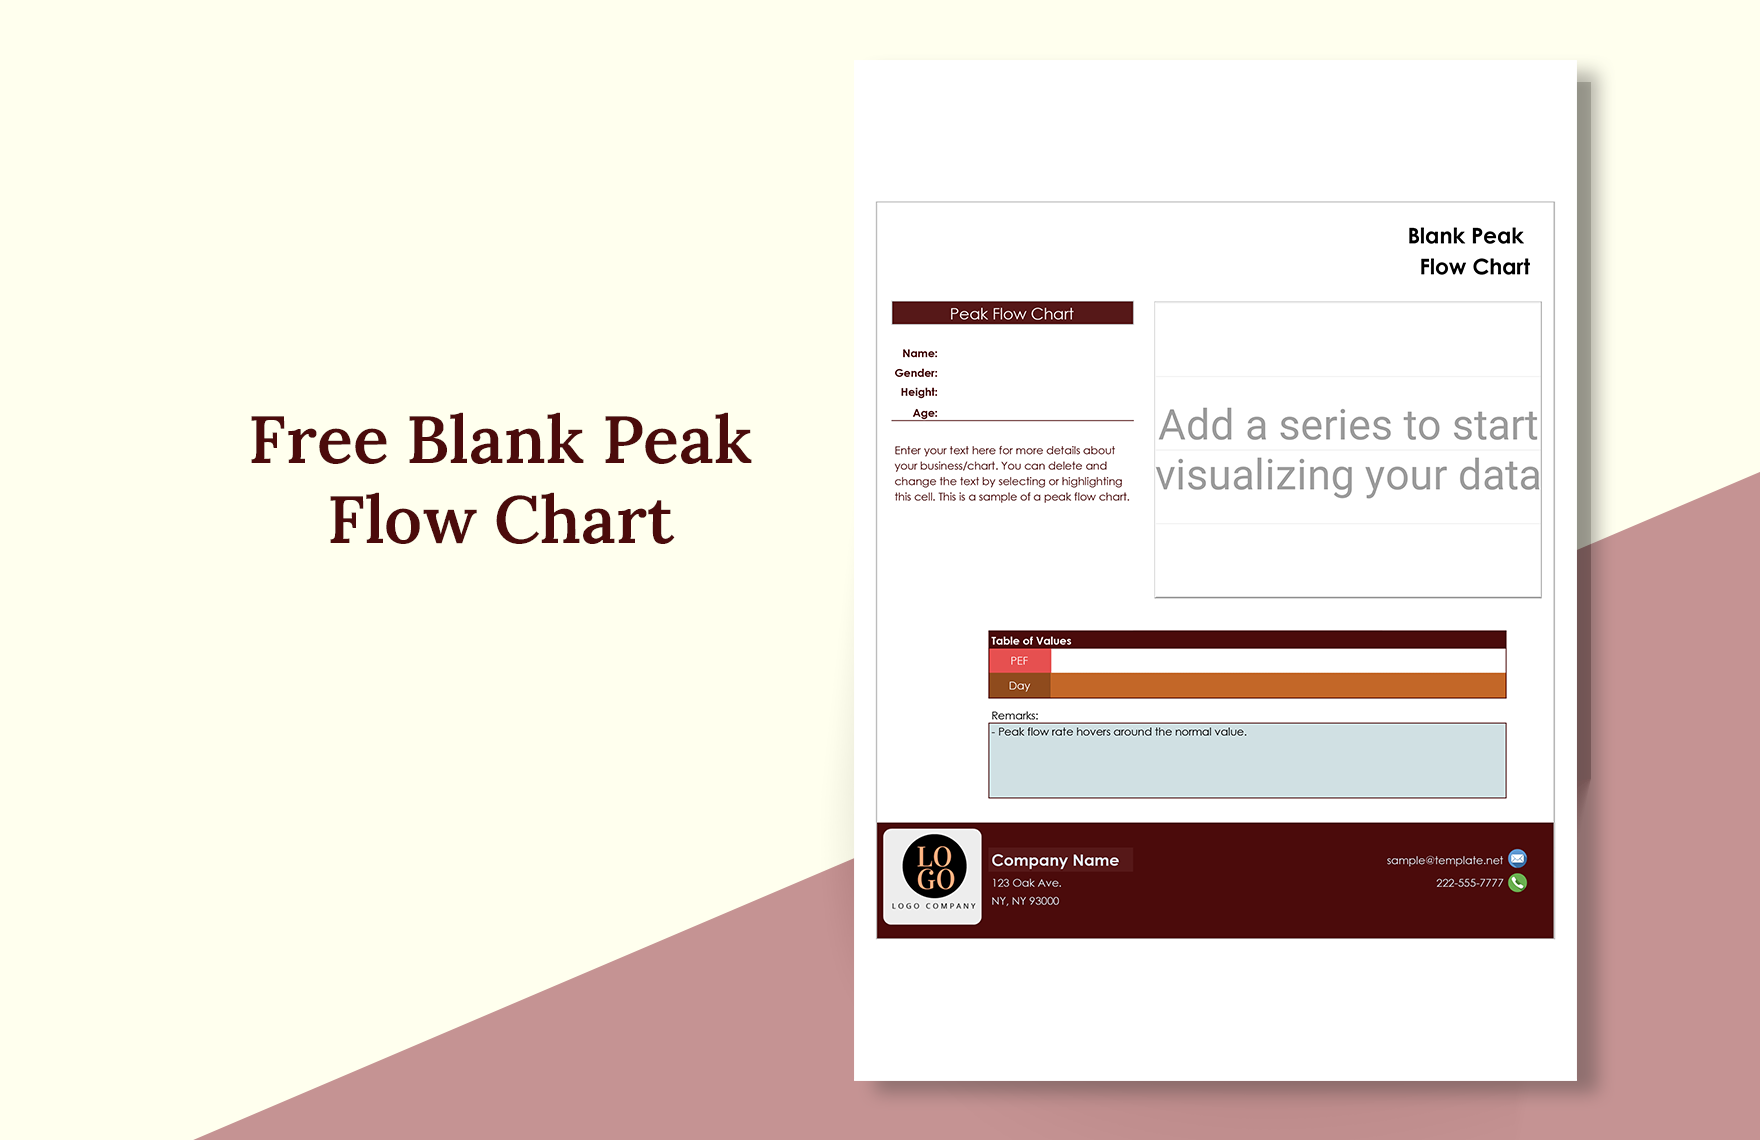 Blank Peak Flow Chart